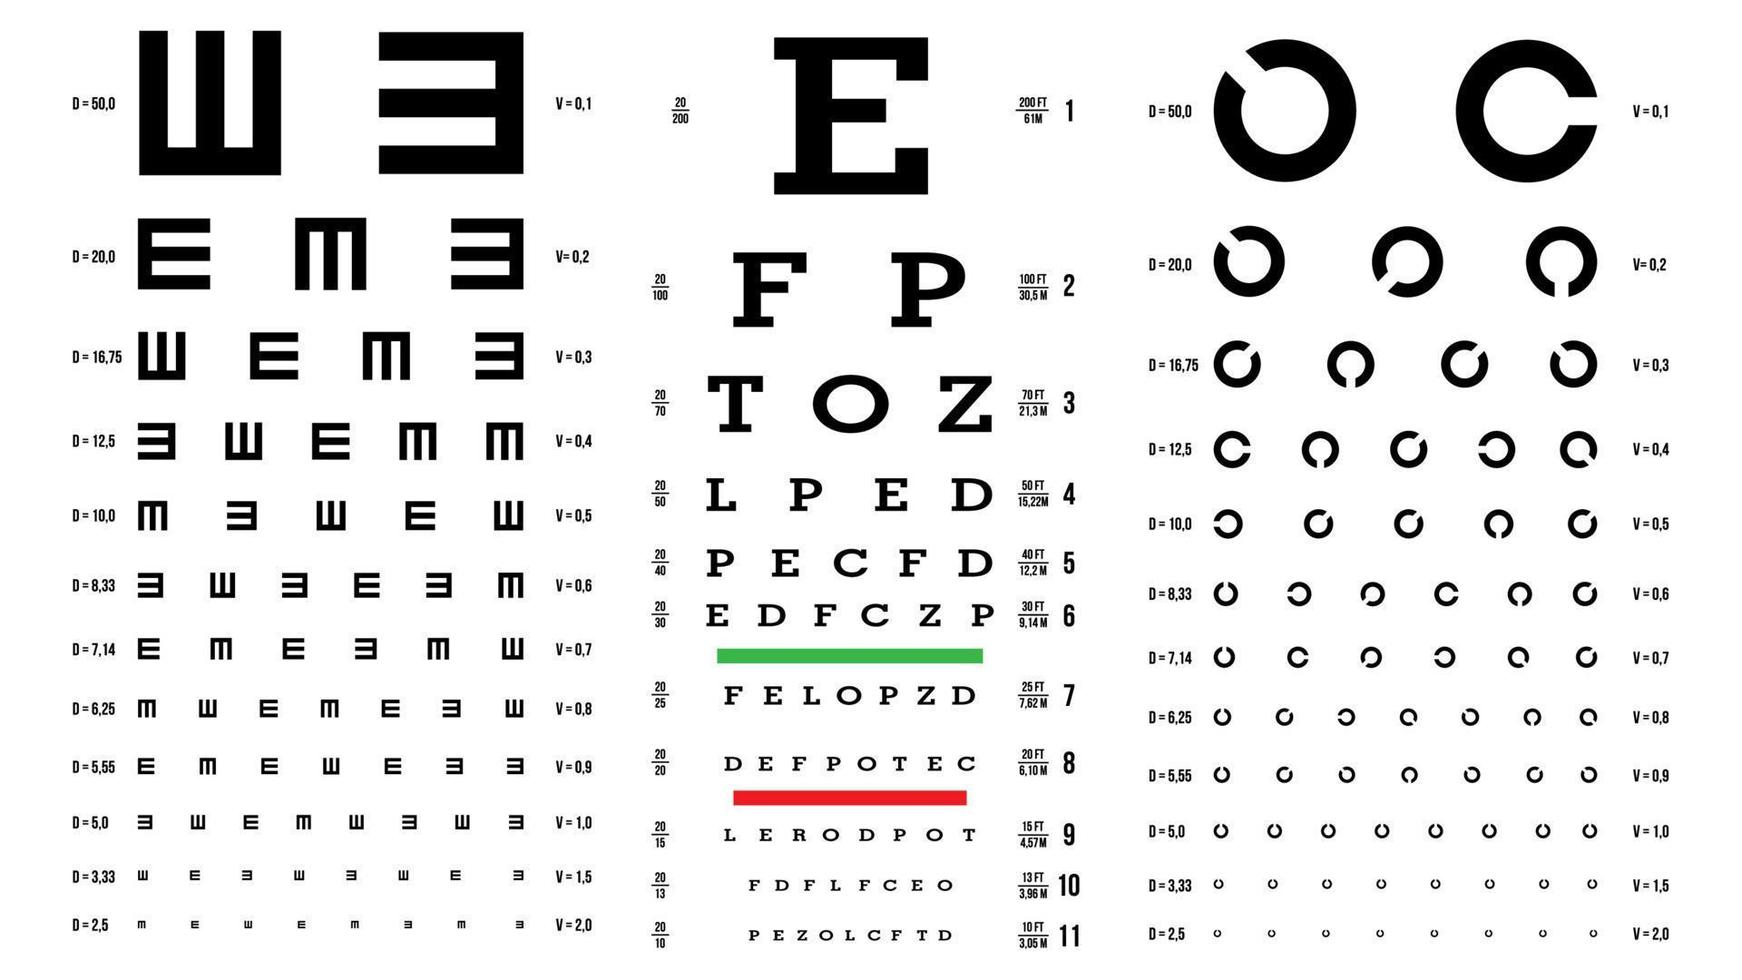 vetor de gráfico de teste de olho. exame de visão. verificação de optometrista. diagnóstico oftalmológico médico. tipos diferentes. vista, visão. exame óptico. isolado na ilustração branca